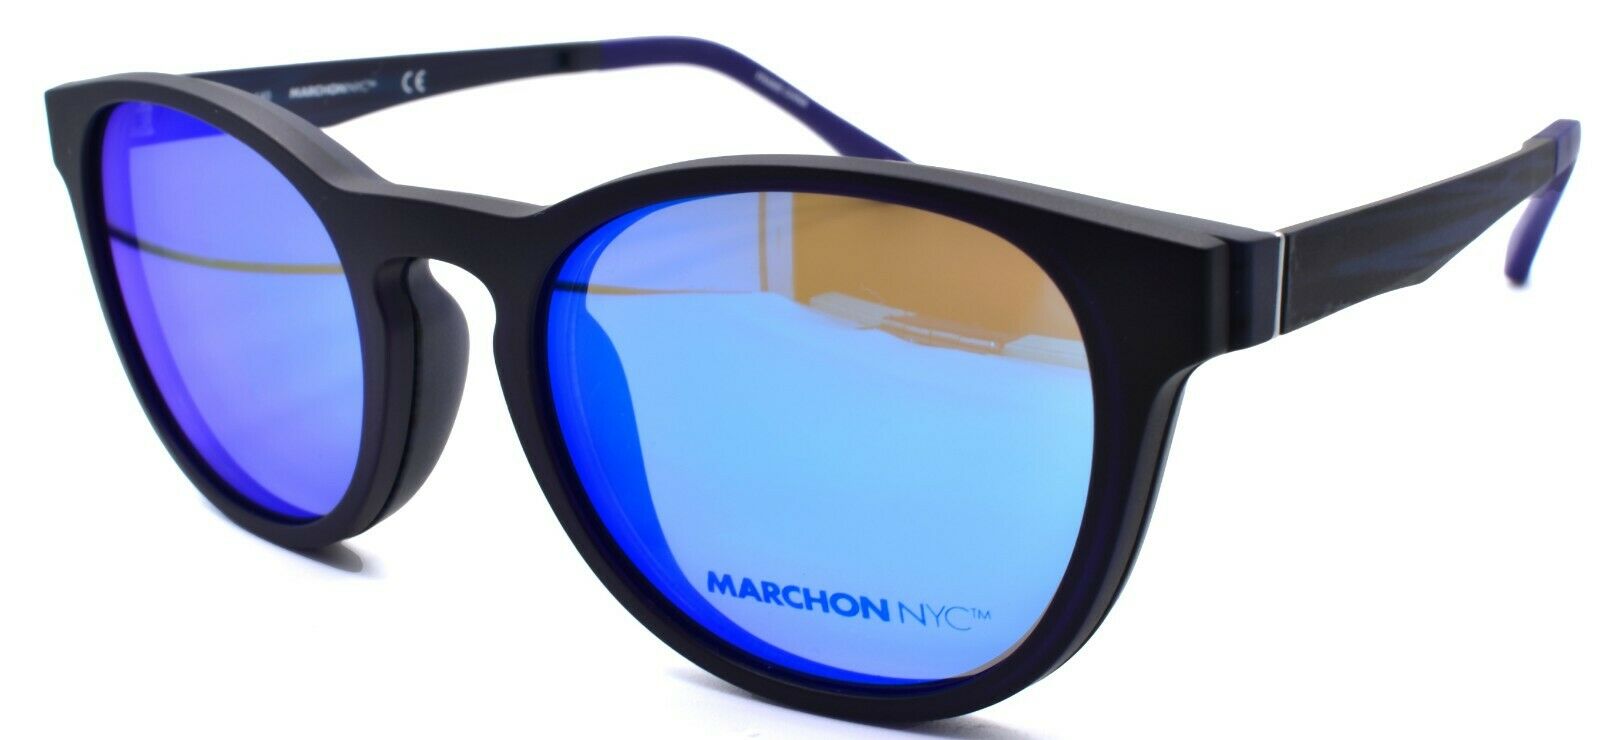 1-Marchon M-1502 412 Eyeglasses Frames 50-19-140 Matte Navy + 2 Magnetic Clip Ons-886895484374-IKSpecs